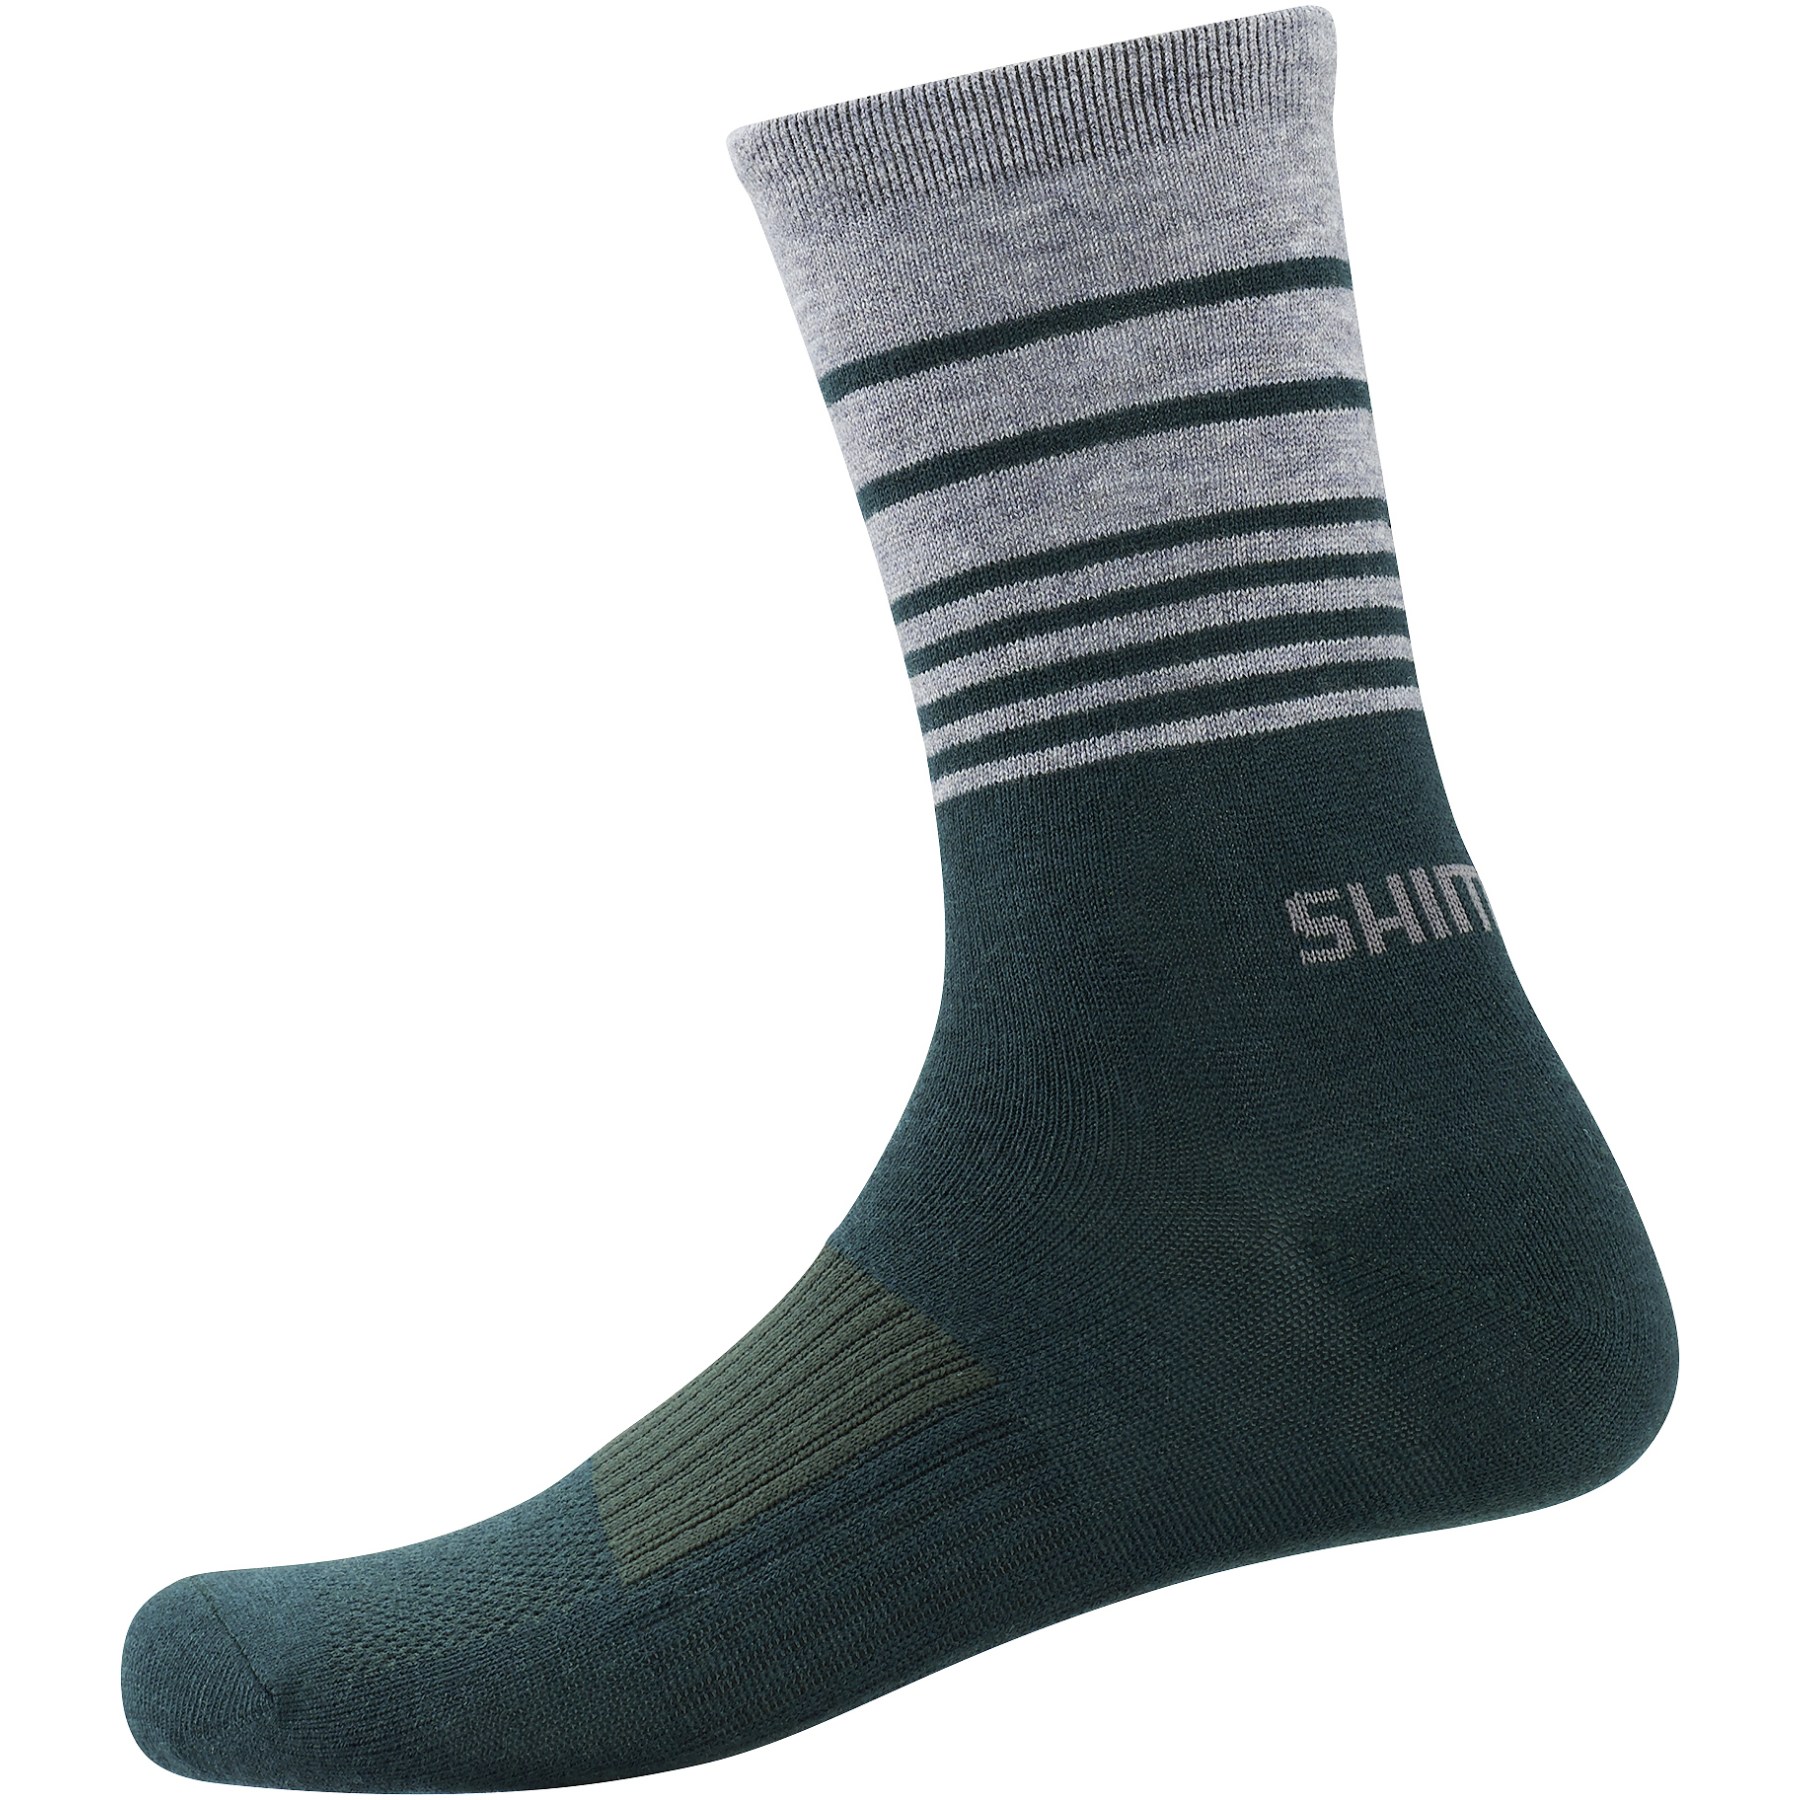 Produktbild von Shimano Original Wool Tall Radsocken - dark green stripes